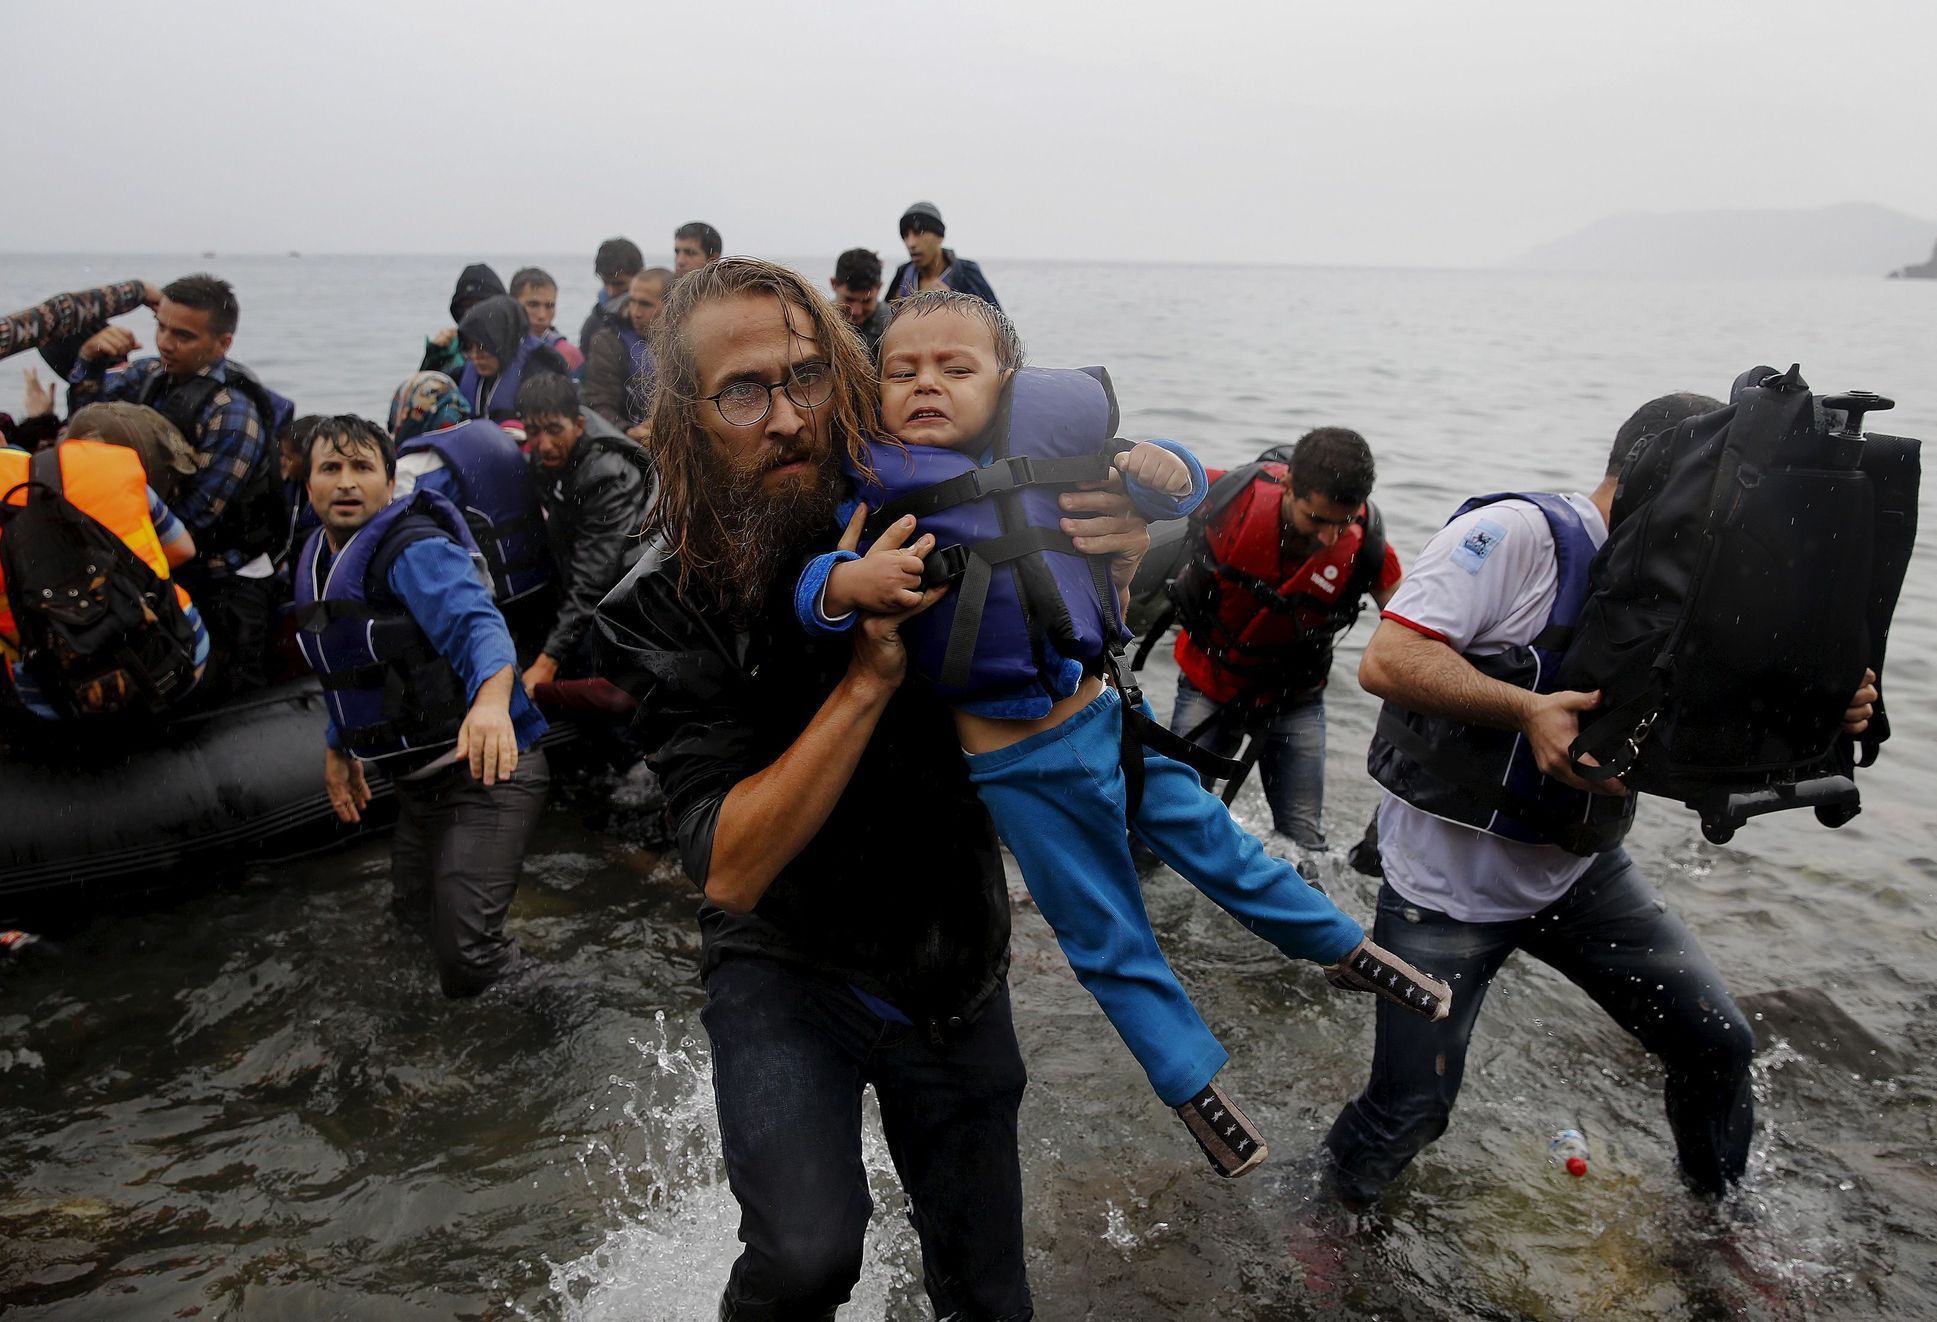 Dobrovolník pomáhá z lodi syrskému dítěti.